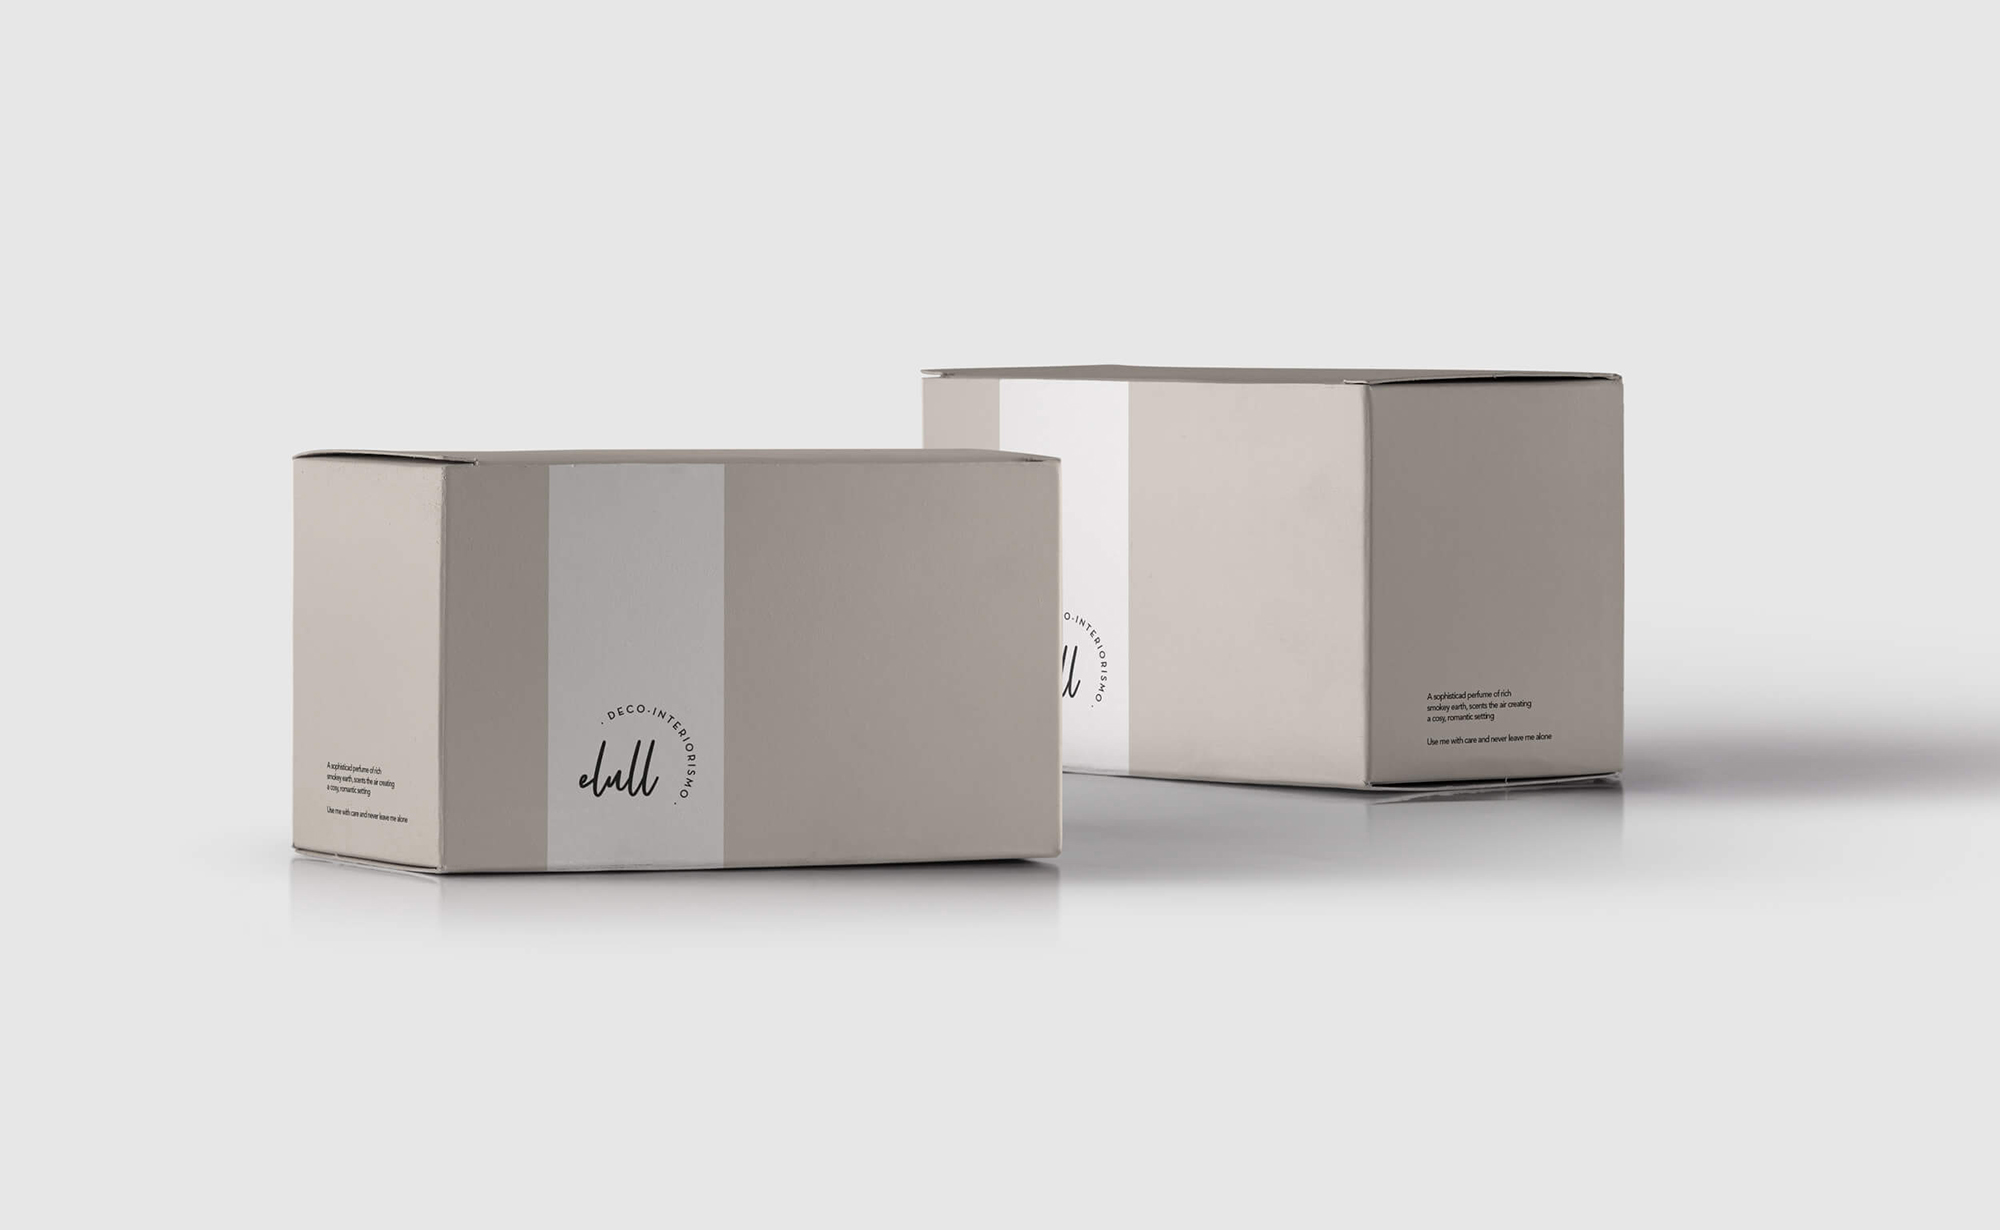 Diseño y desarrollo de identidad visual corporativa para Elull Deco-interiorismo. Cajas packaging.